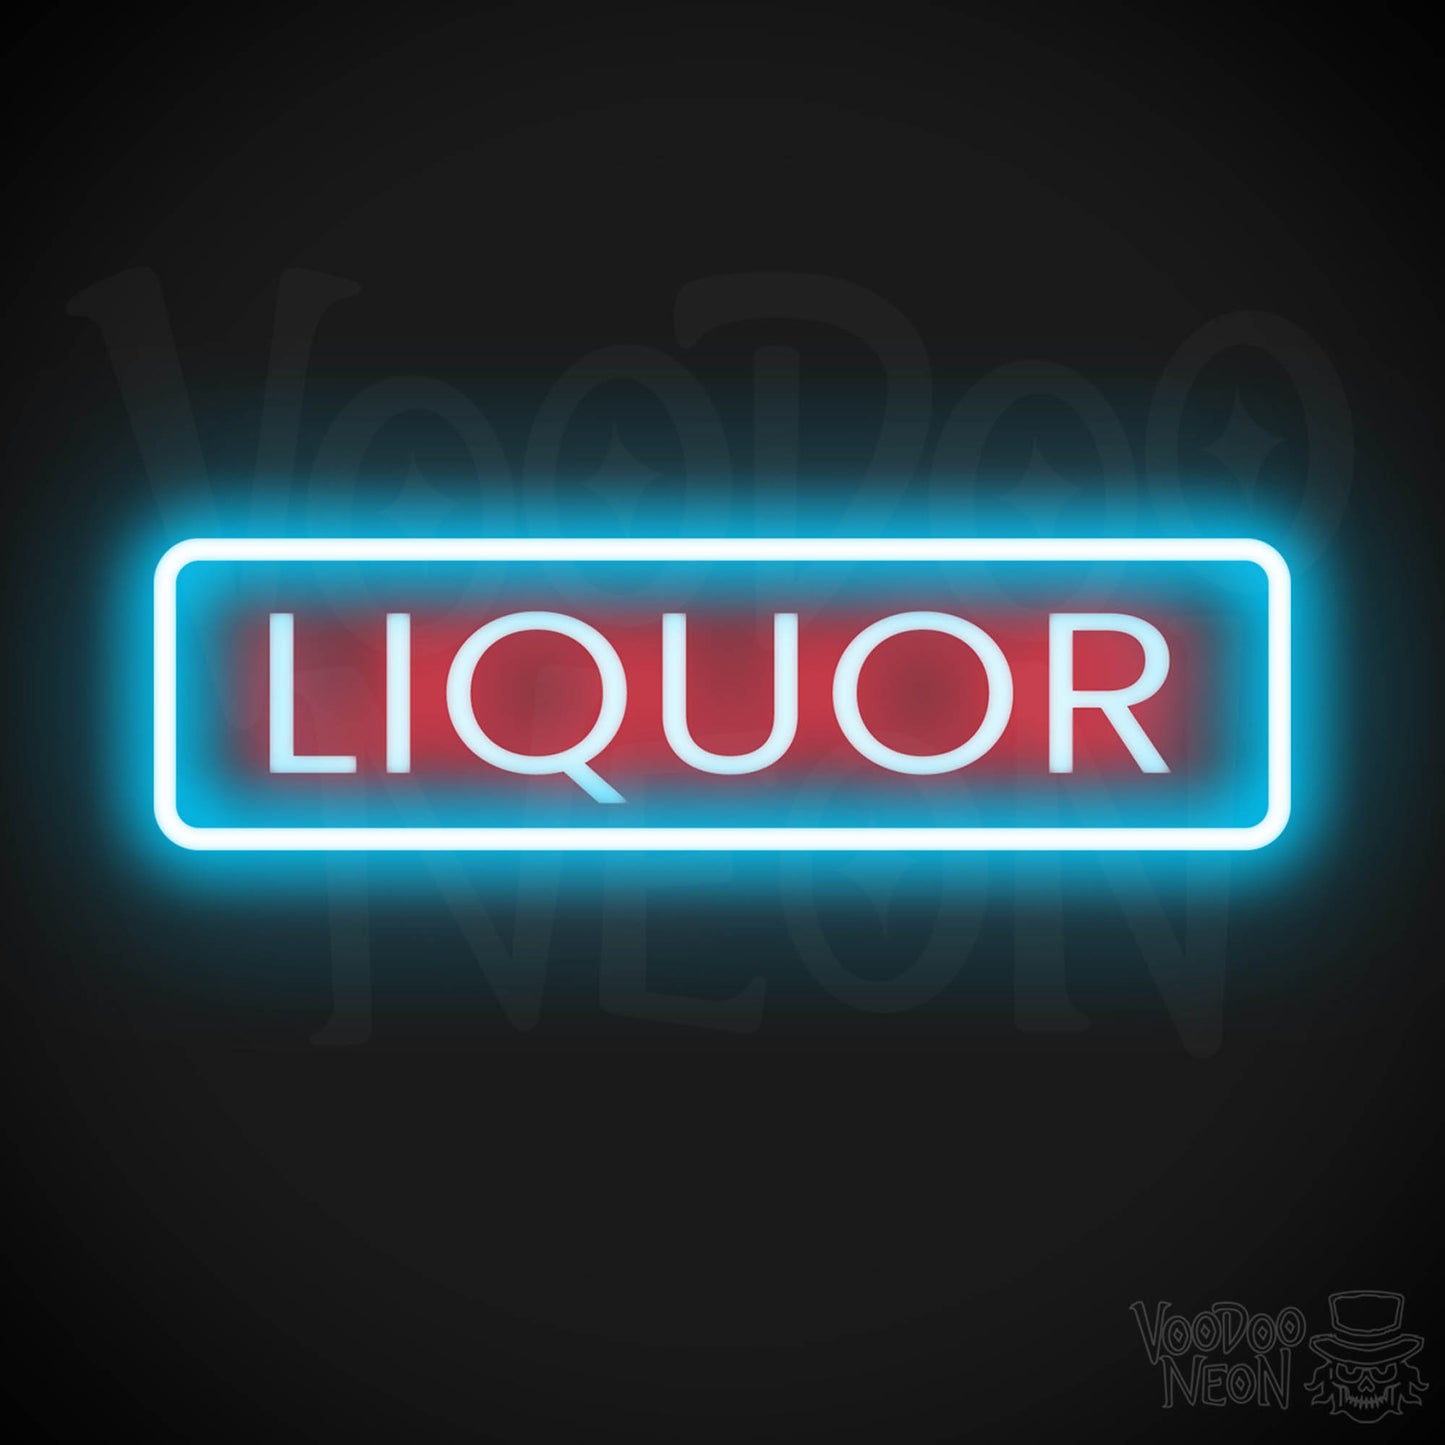 Liquor Store LED Neon - Multi-Color